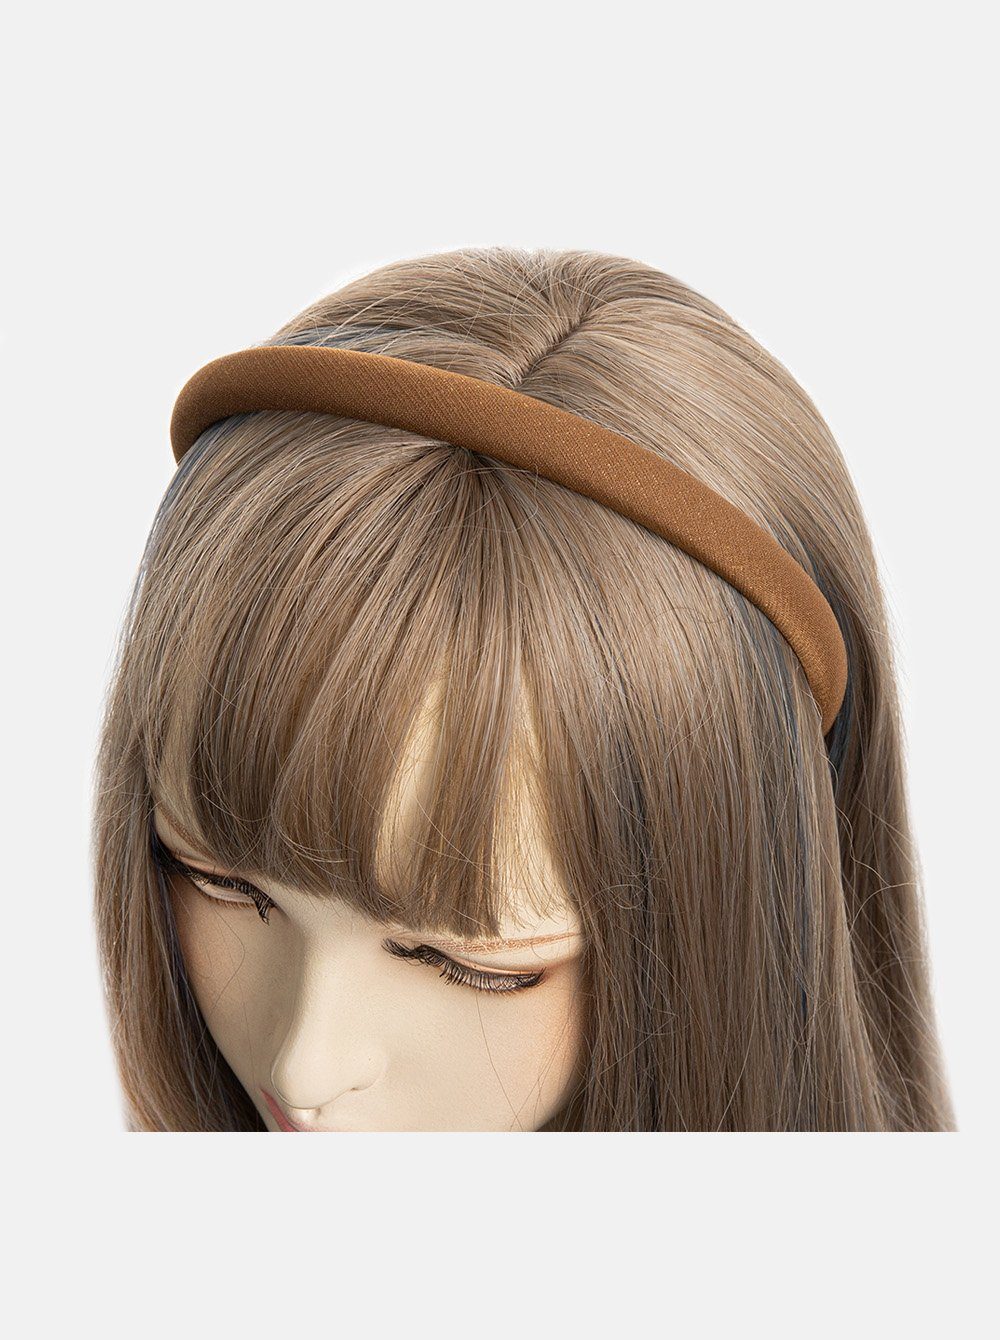 Haarschmuck mit axy Wunderschön Stirnband Braun feinen gepolstertes Haarreif Stoff aus Haarreif Metallicfäden,